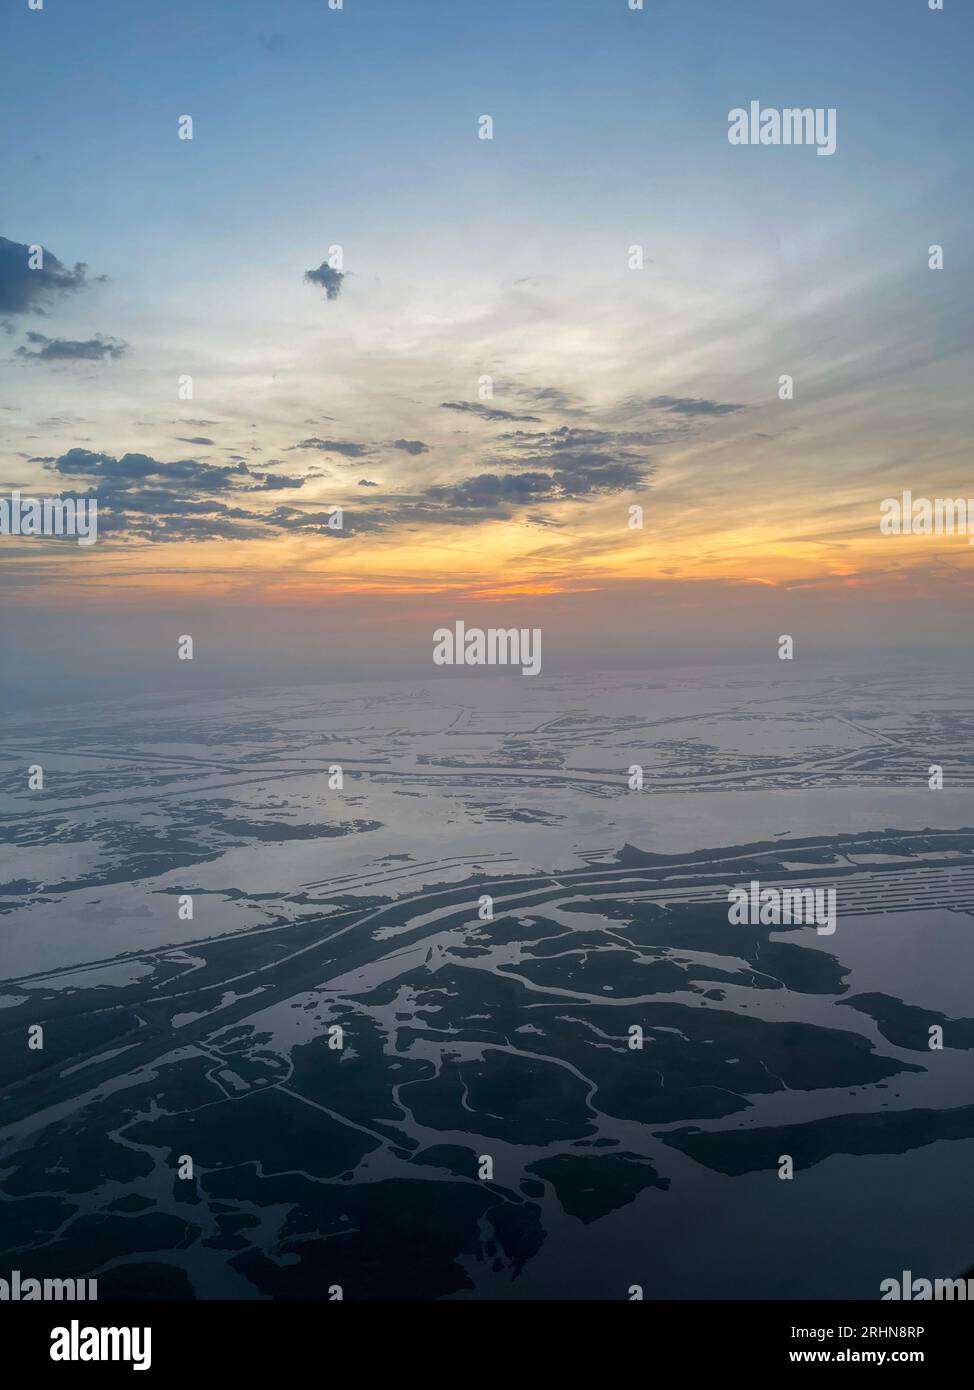 Aerial view of Louisiana marshlands Stock Photo